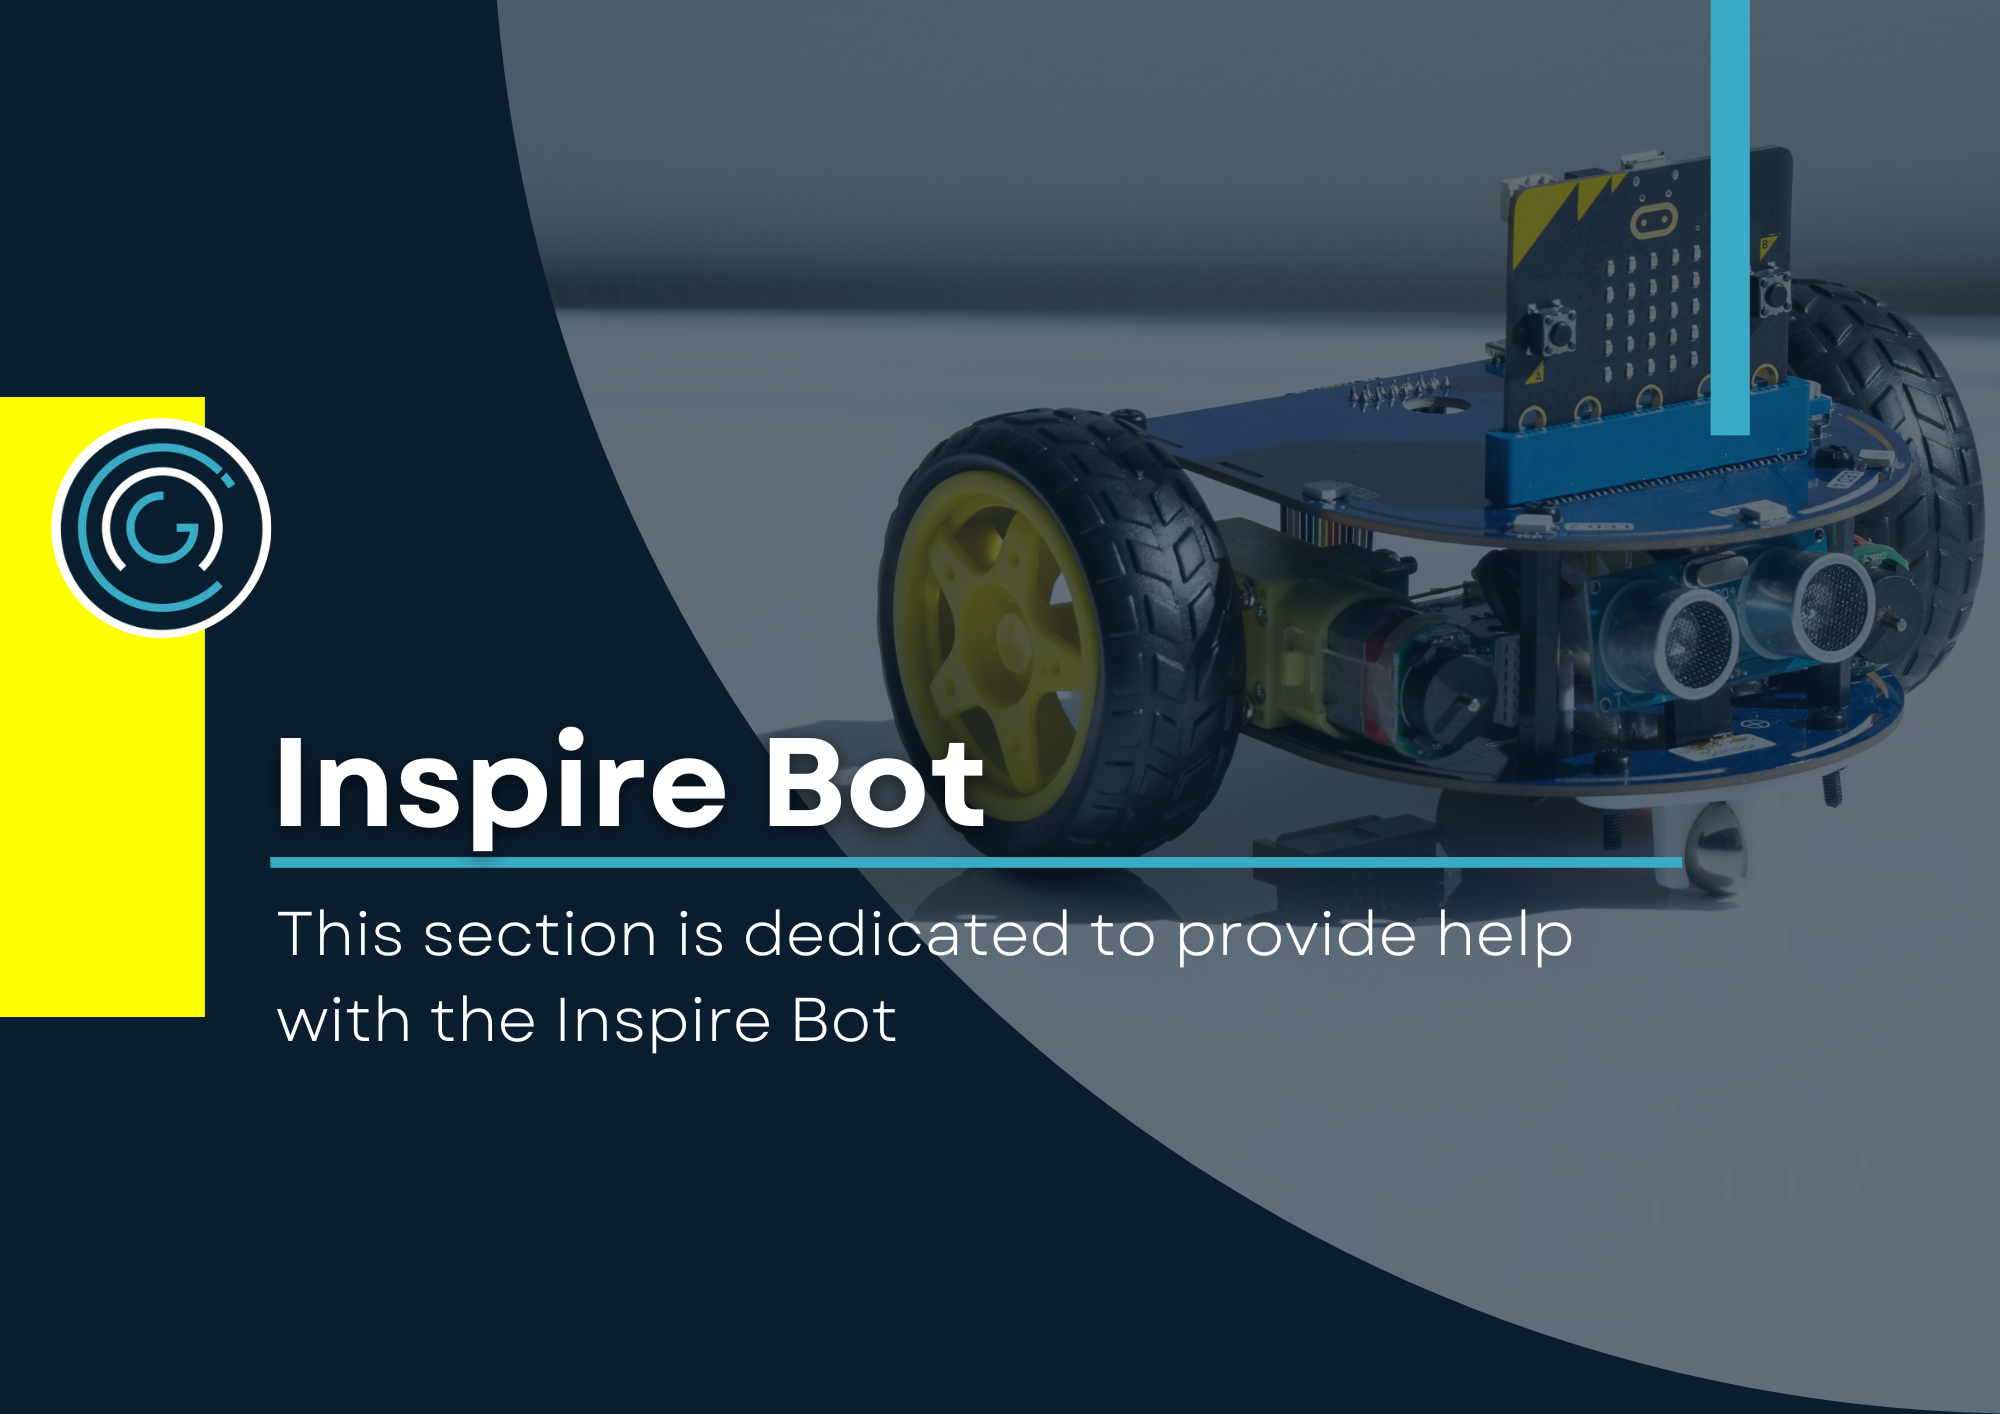 Inspire Bot help